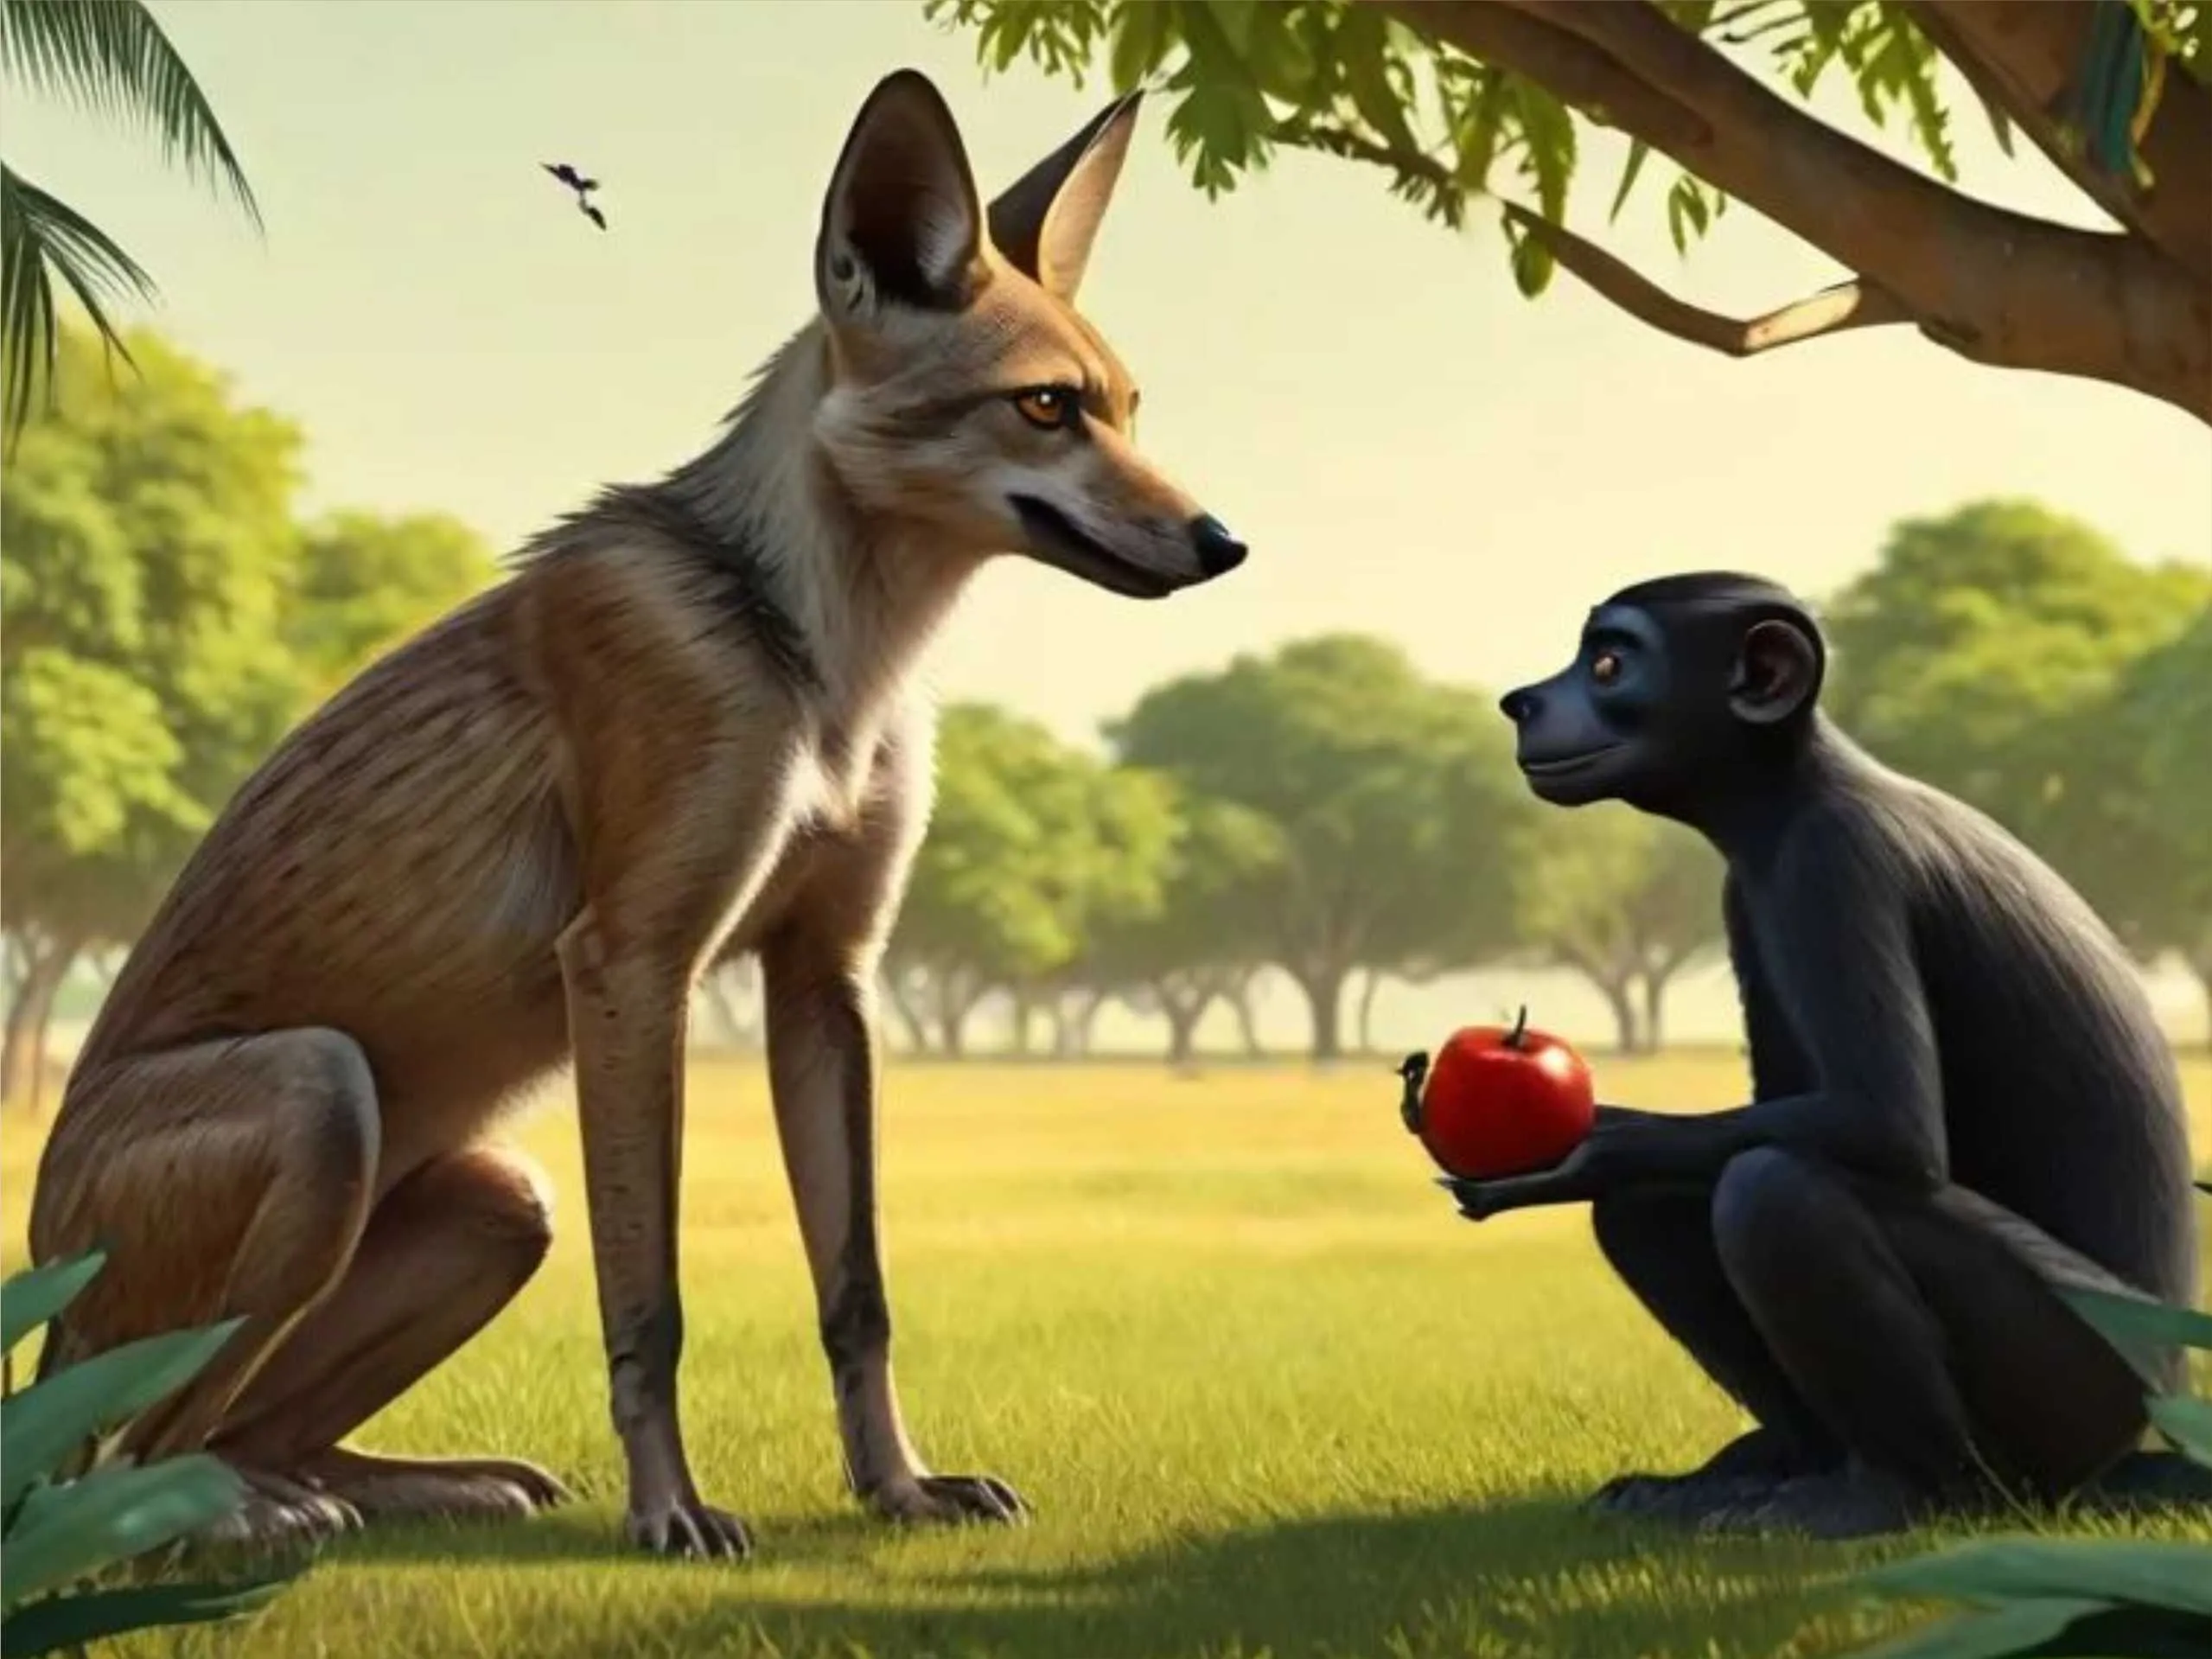 cartoon image of a jackal and monkey